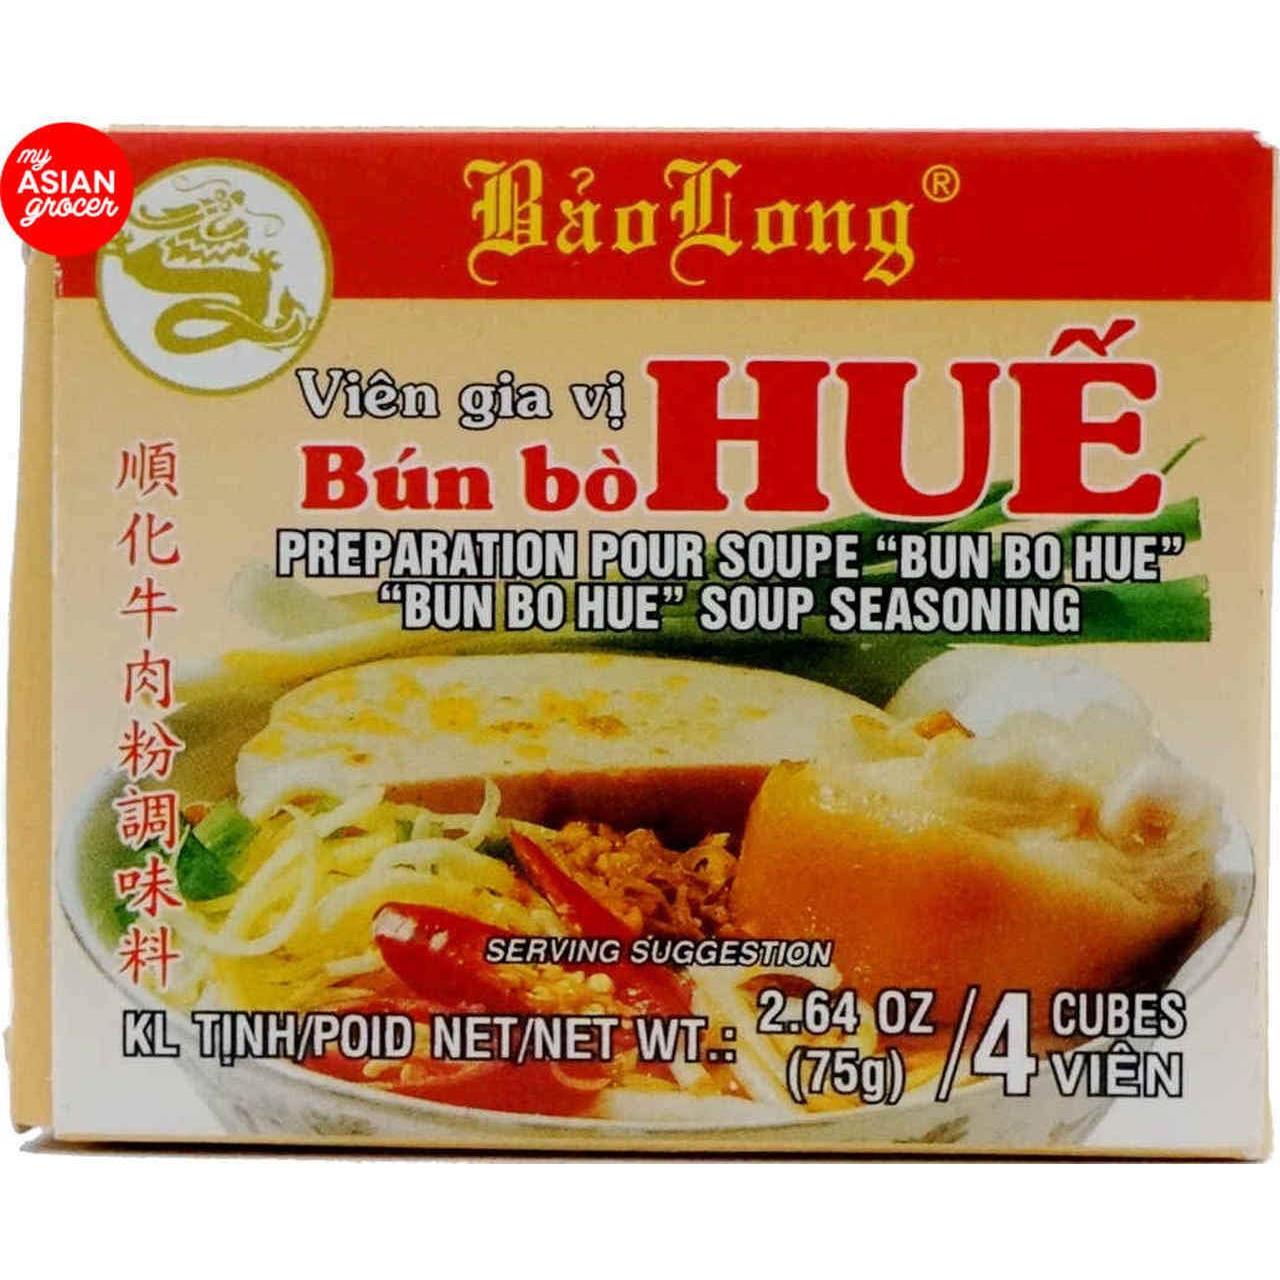 4 Packs Bao Long Bun Bo Hue Soup Seasoning 16 Cubes